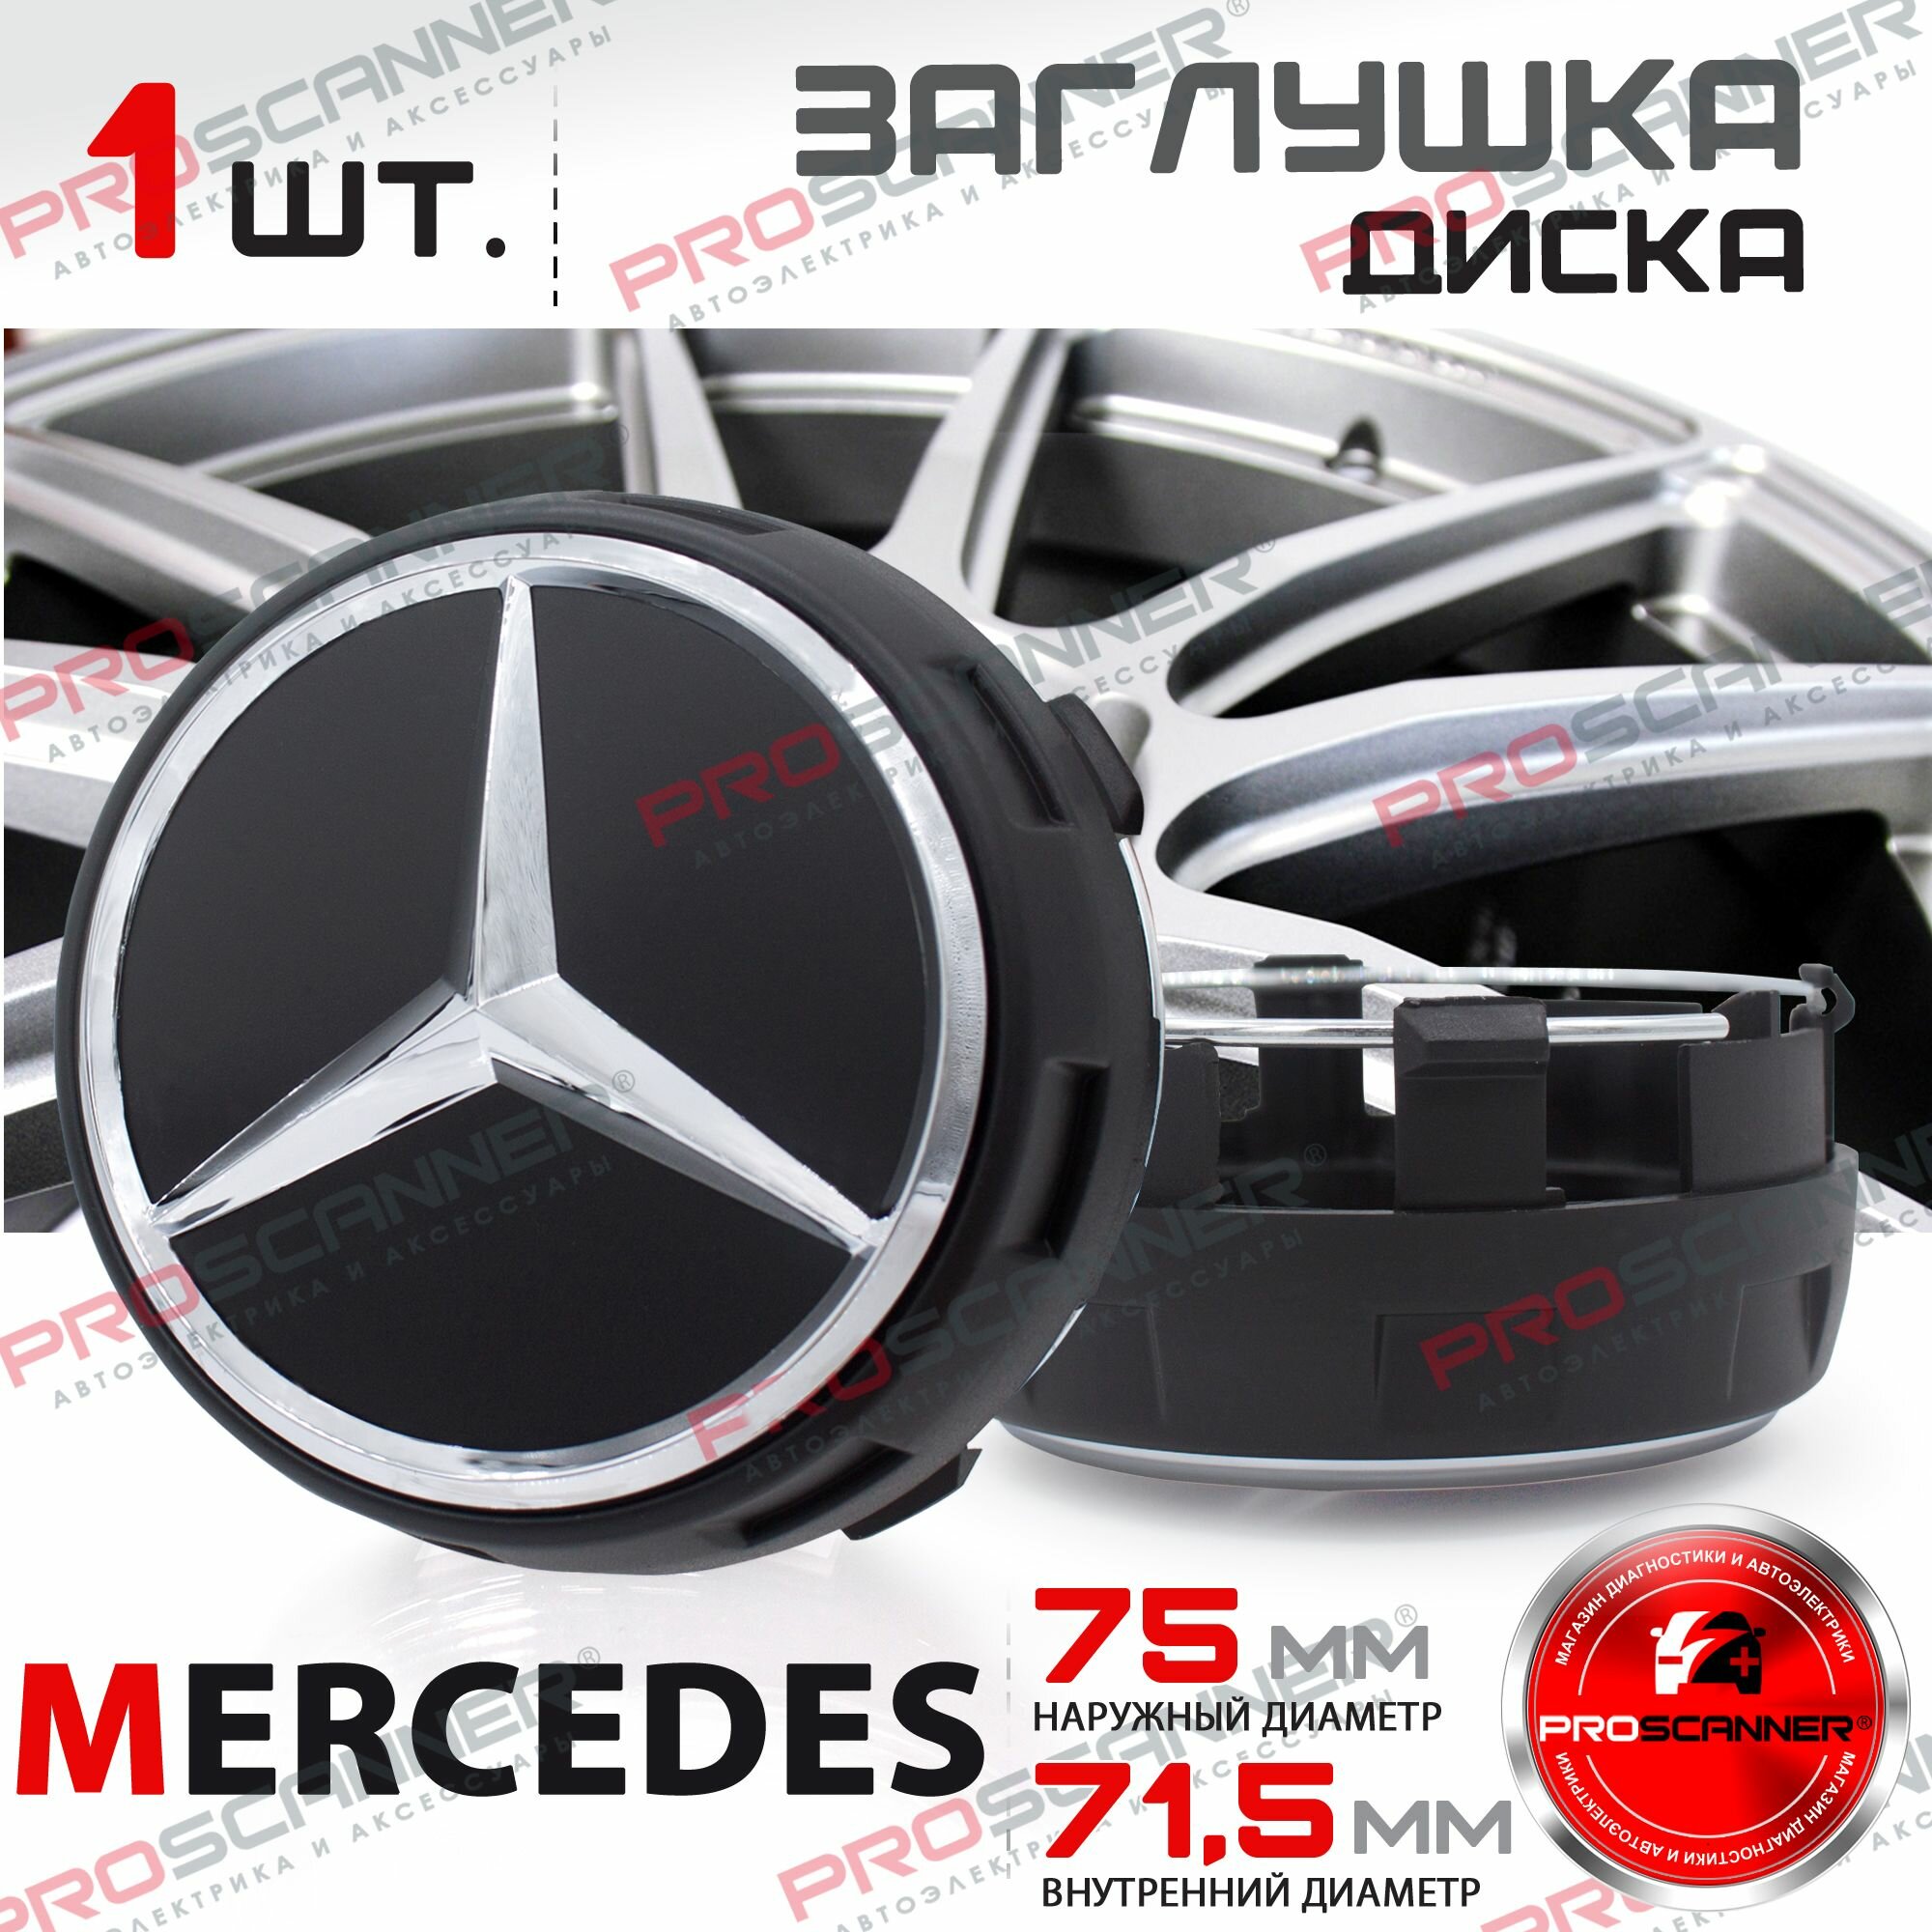 Колпачок заглушка на литой диск колеса для Mercedes 75 мм A0004000900 - 1 штука черный/высокие